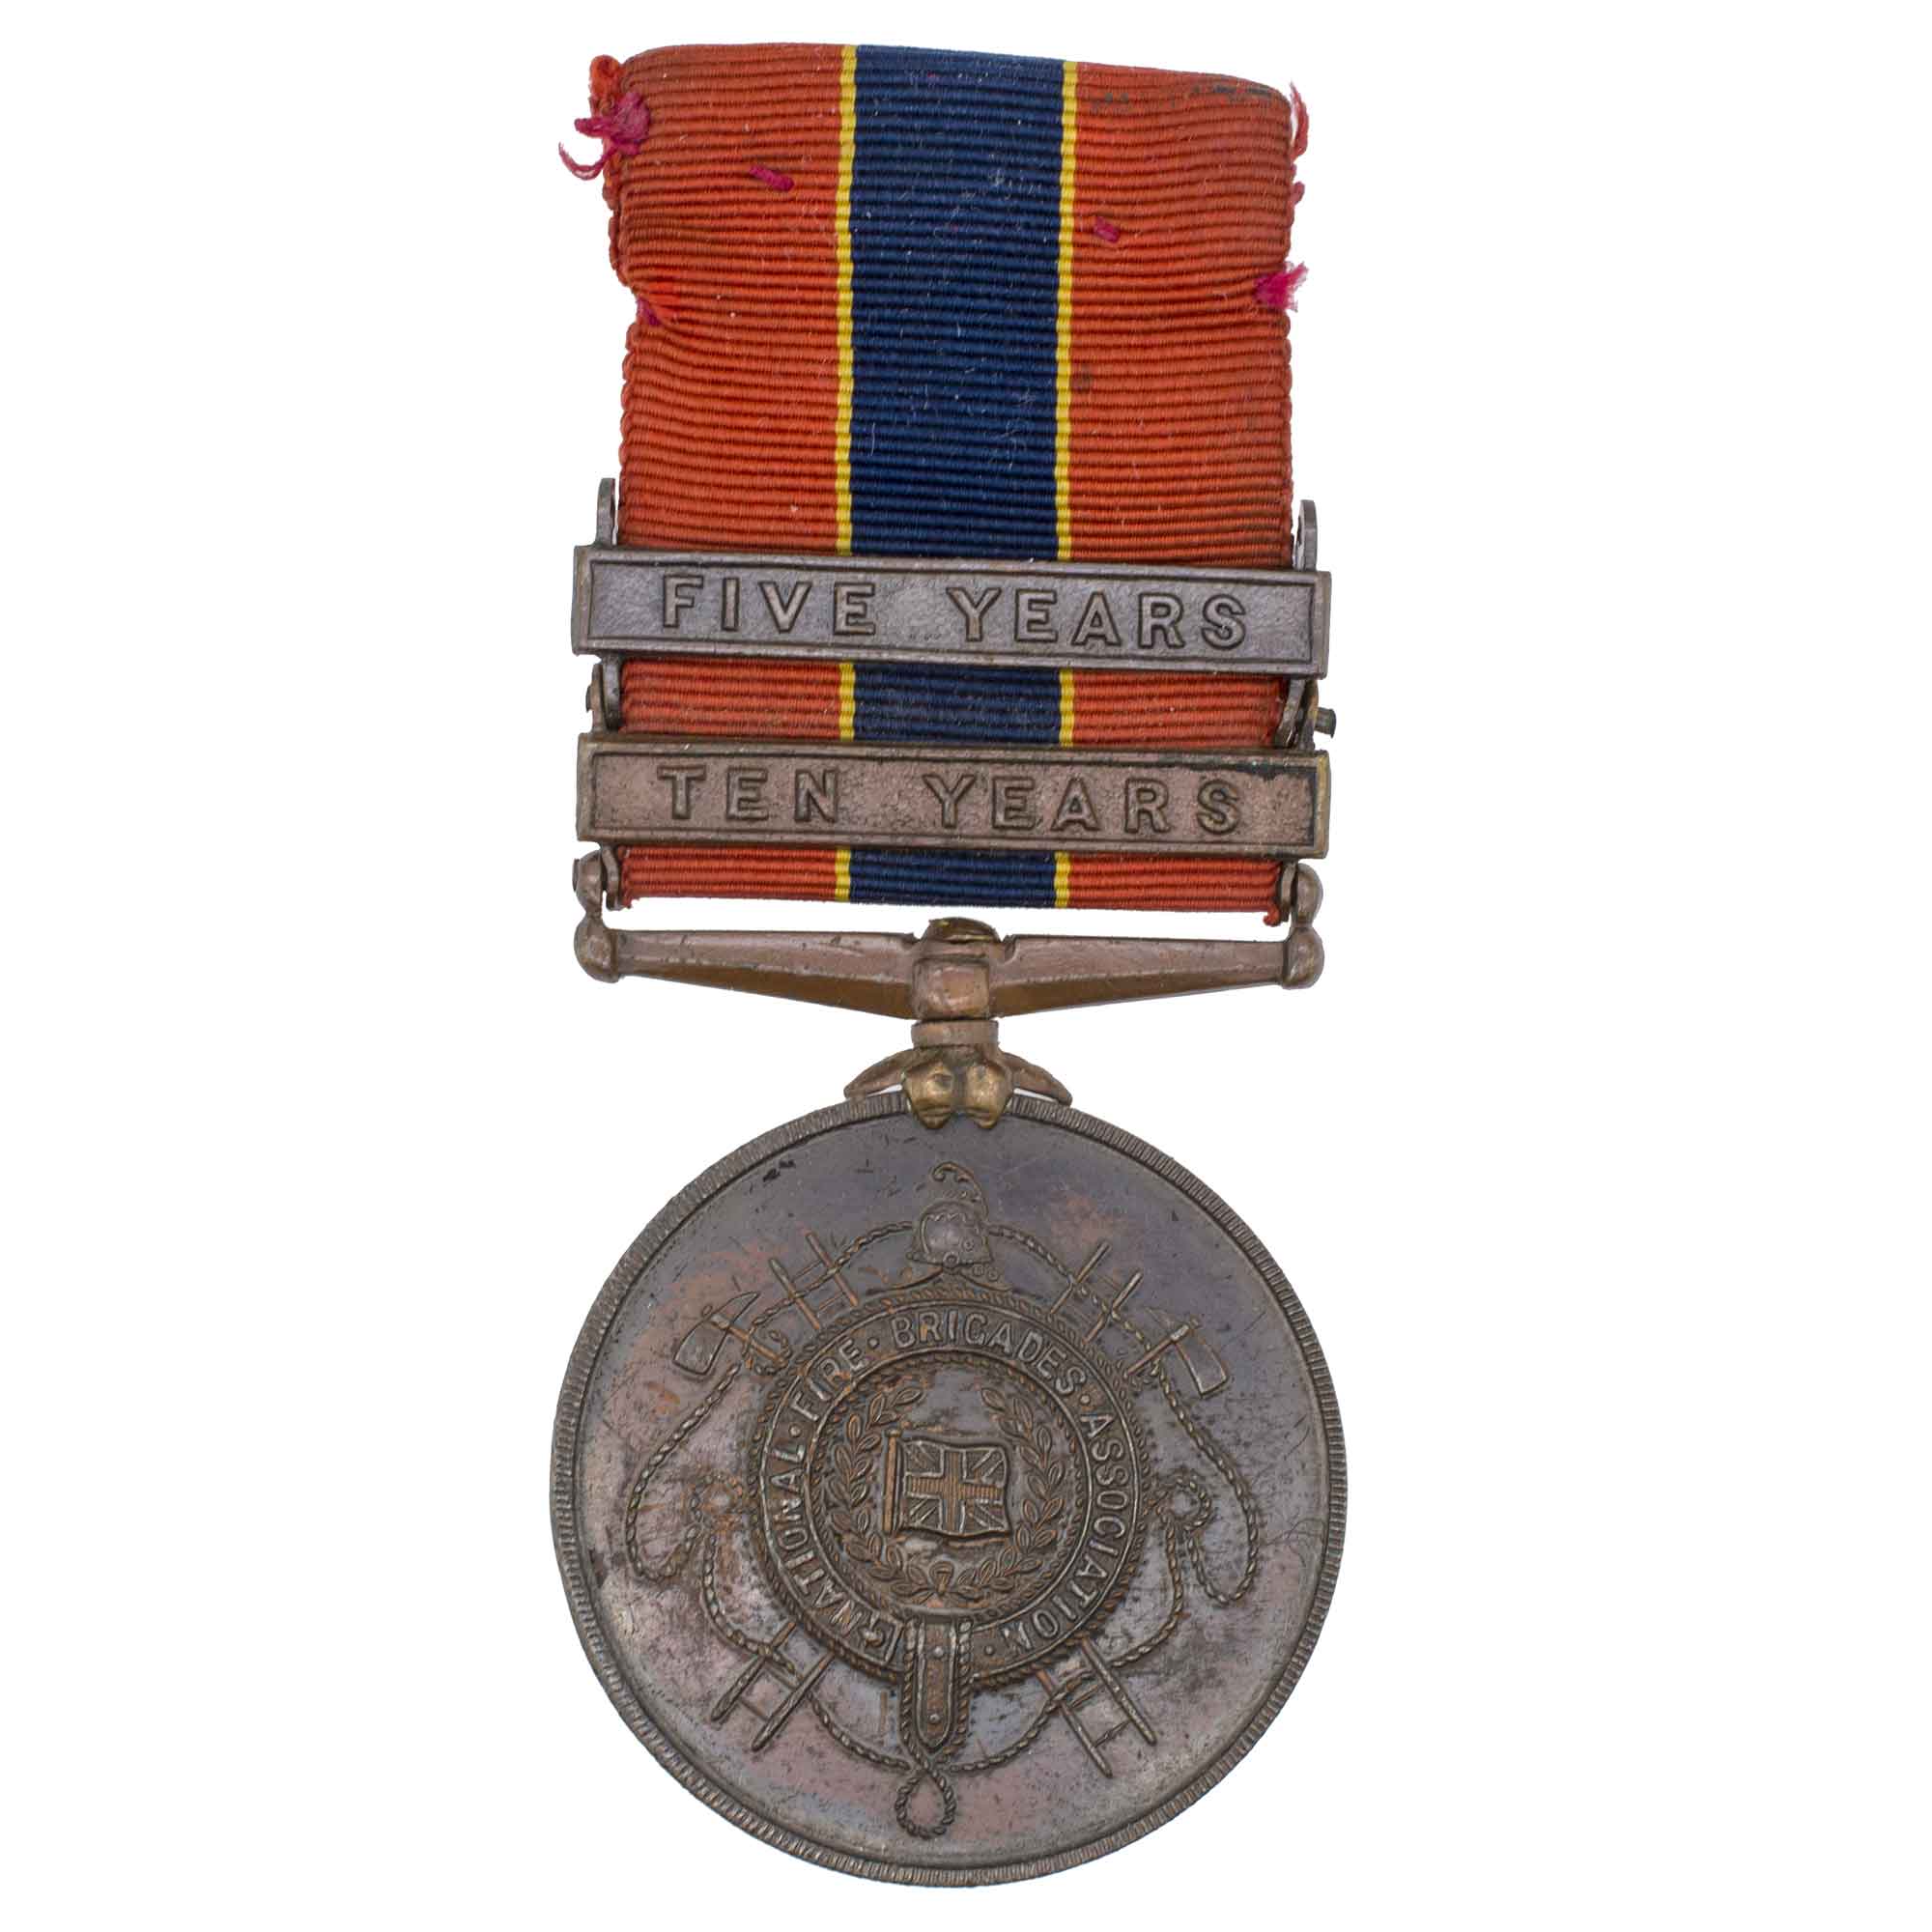 Великобритания. Медаль Национальной ассоциации пожарных бригад "За долгую службу" с планками "за 10 лет" и "5 лет" службы.